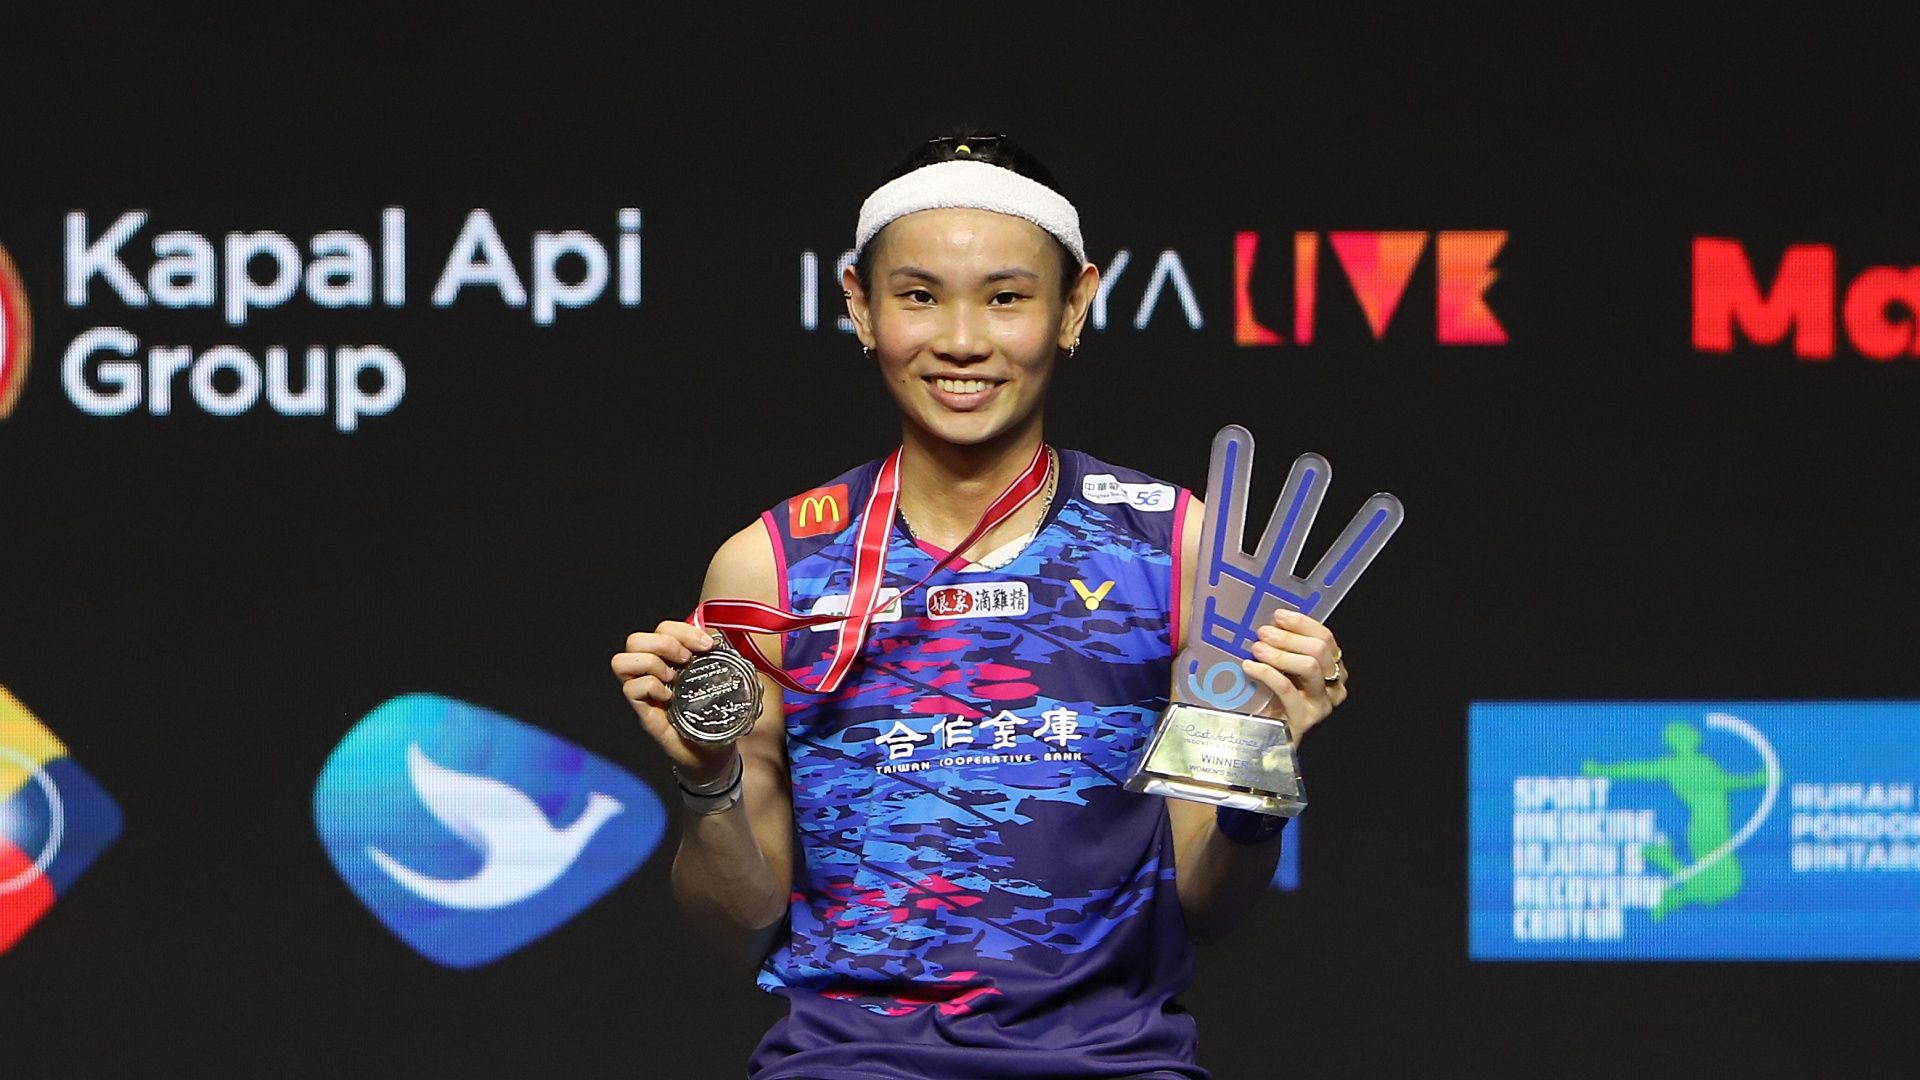 Tahun ini jadi kali kedua Tai Tzu Ying sukses menjuarai turnamen bulu tangkis Indonesia Open. Sebelumnya, ia jadi kampiun edisi 2016.